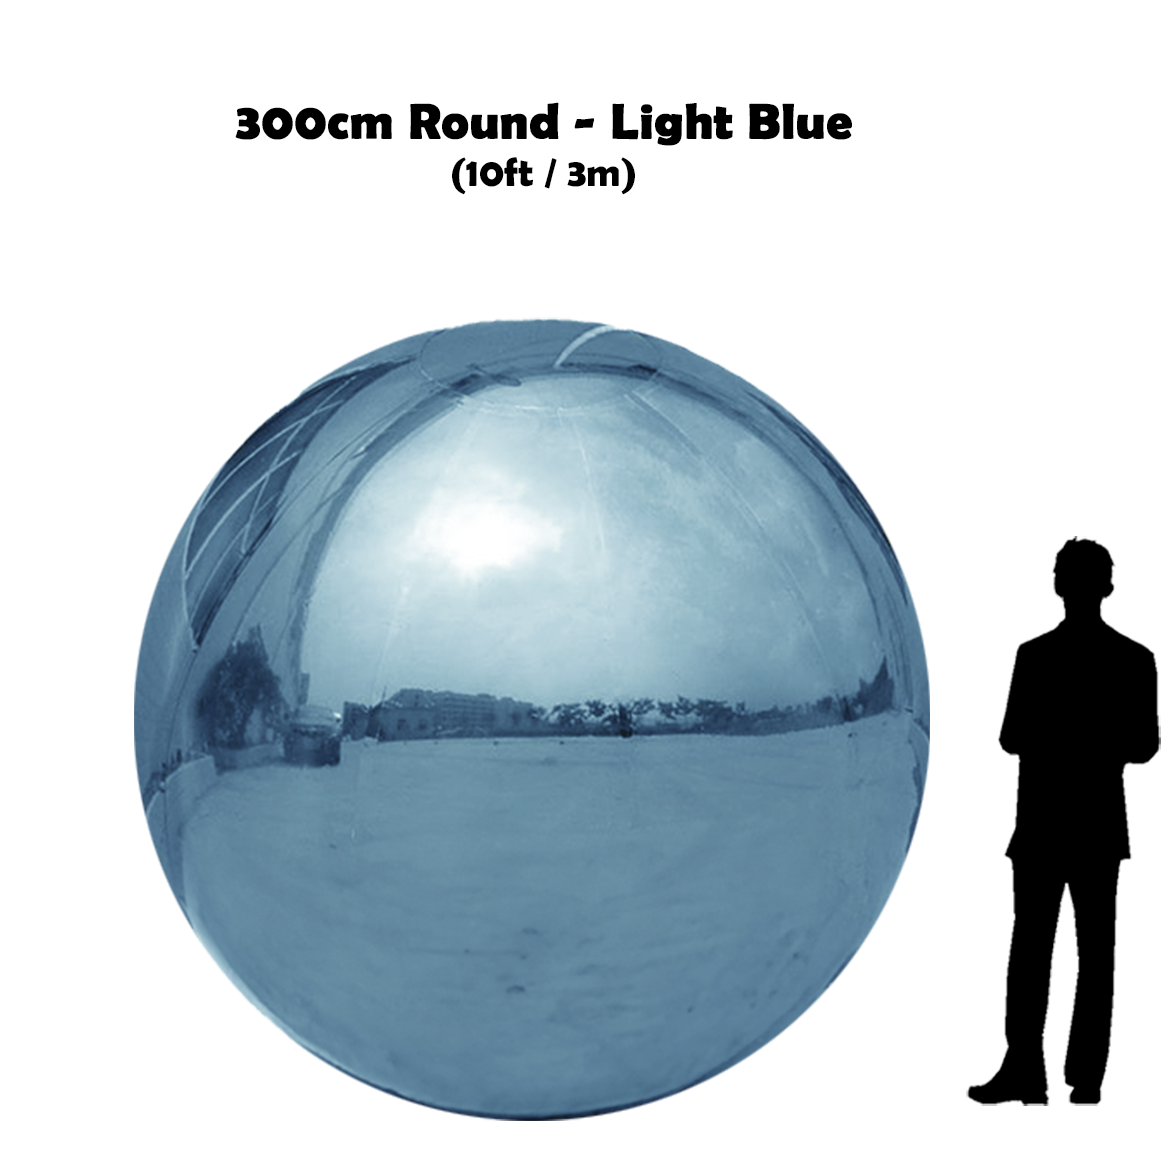 300 cm Big light blue ball beside 5'10 guy silhouette 